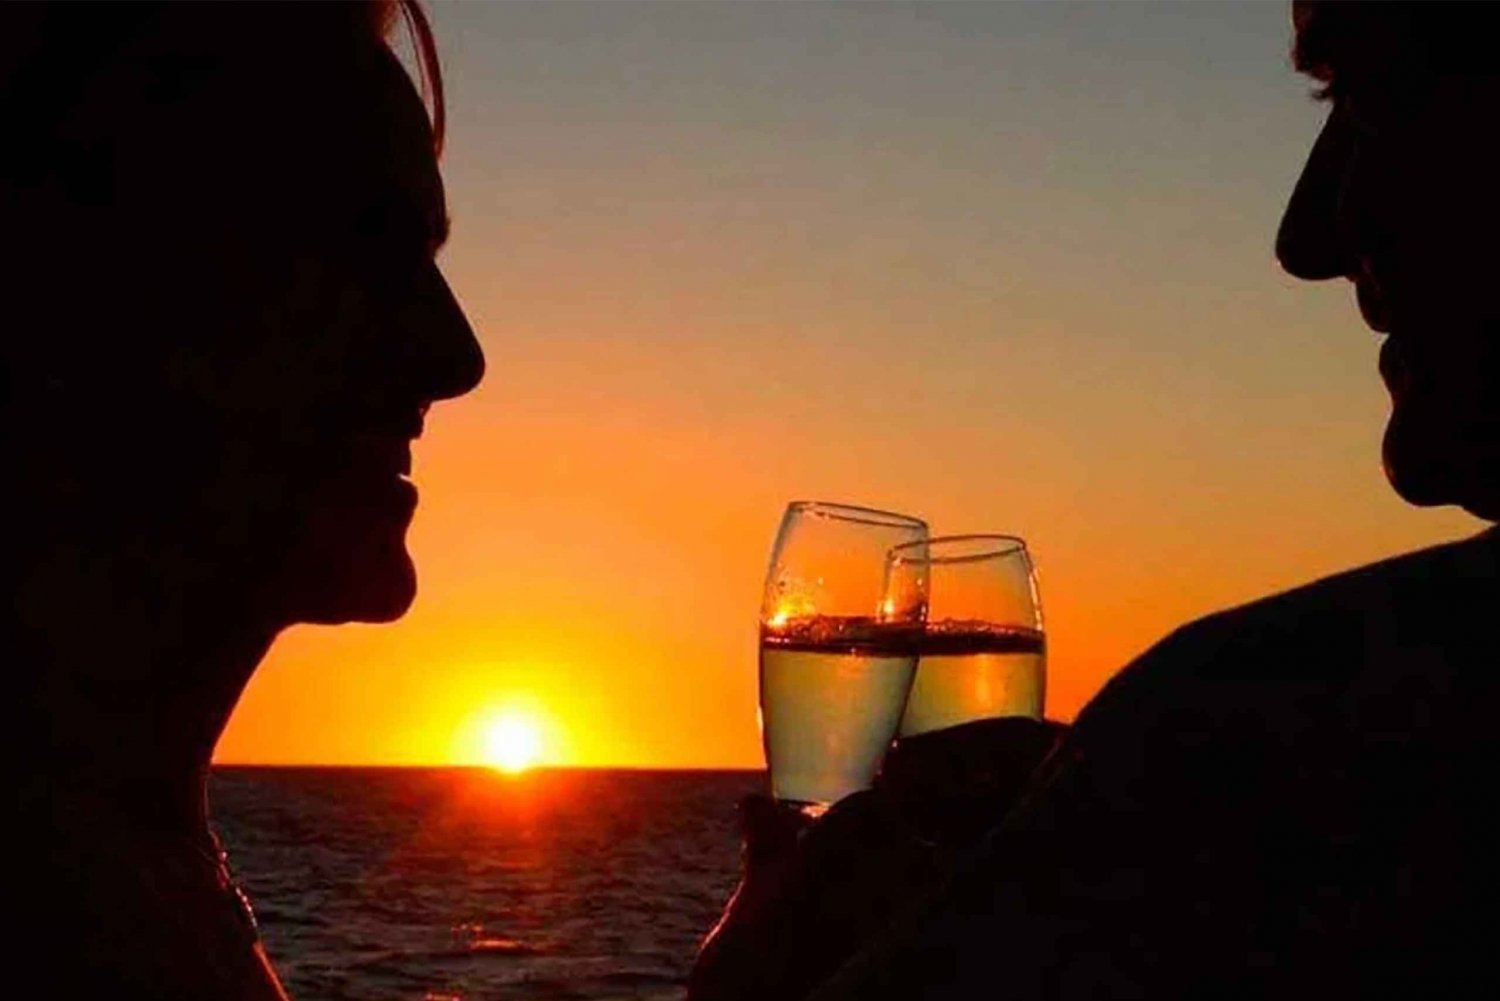 Ibiza : Croisière de plongée en apnée dans les grottes au coucher du soleil